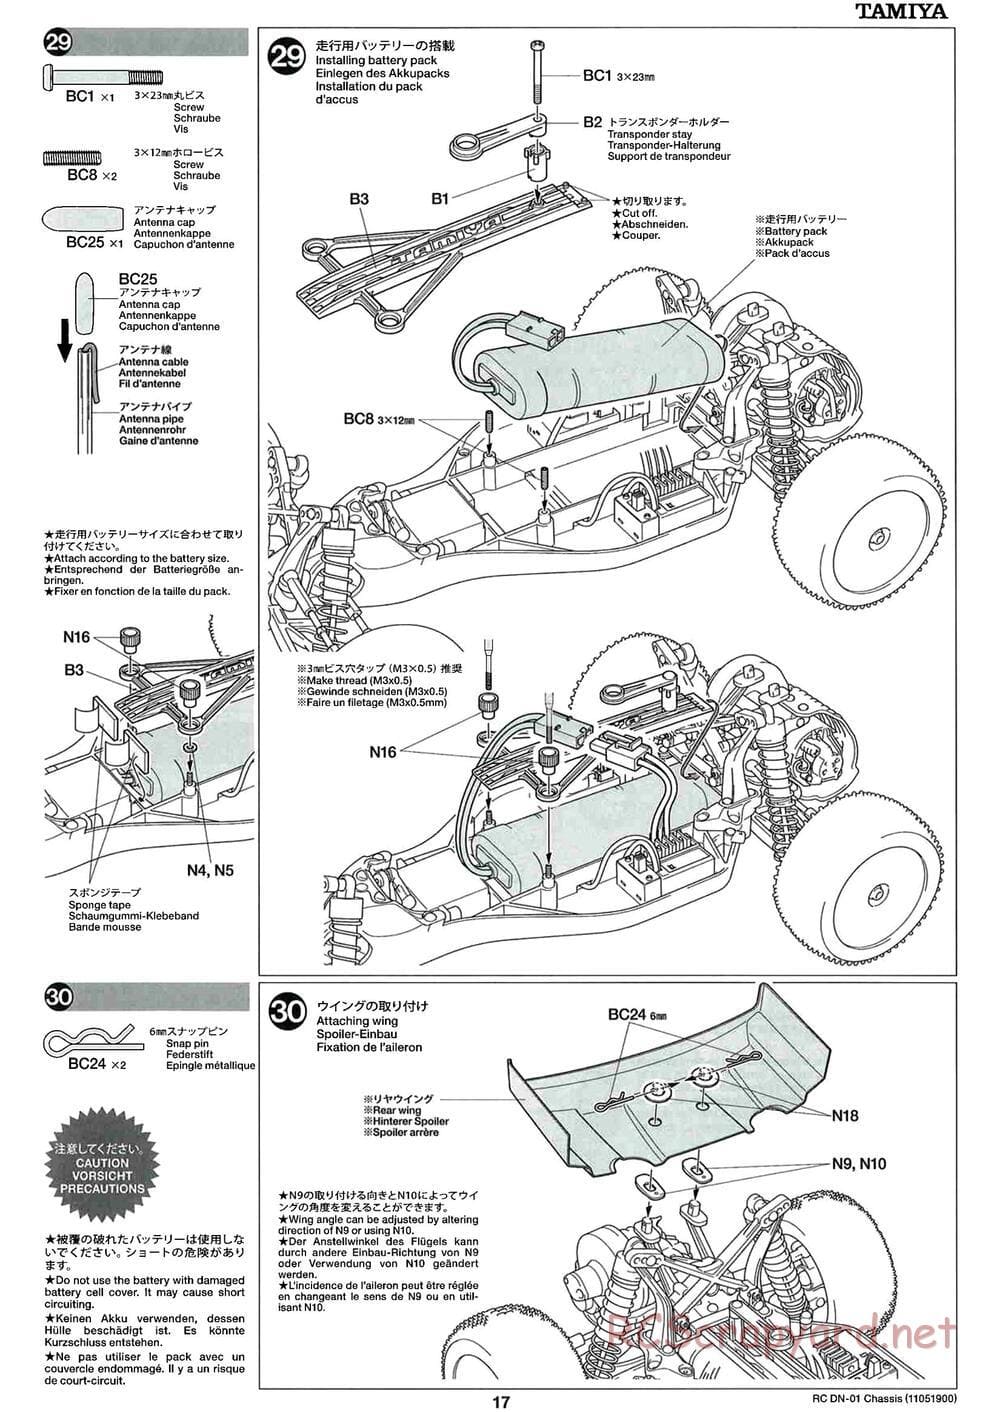 Tamiya - DN-01 Chassis - Manual - Page 17